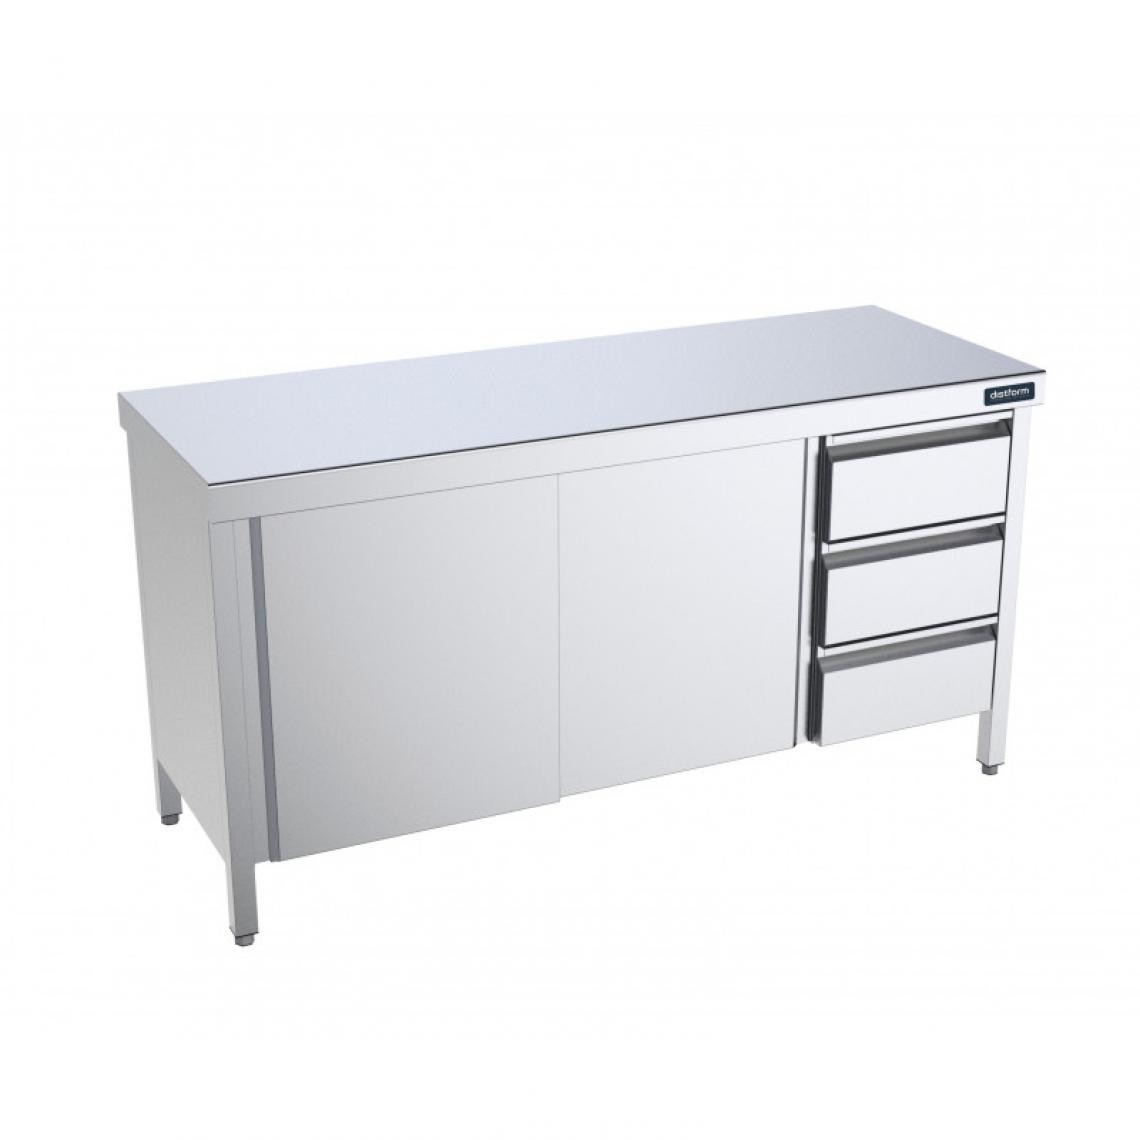 DISTFORM - Table Inox centrale avec portes coulissantes et tiroirs à droite - Gamme 600 - Distform - Acier inoxydable2400x600 - Tables à manger